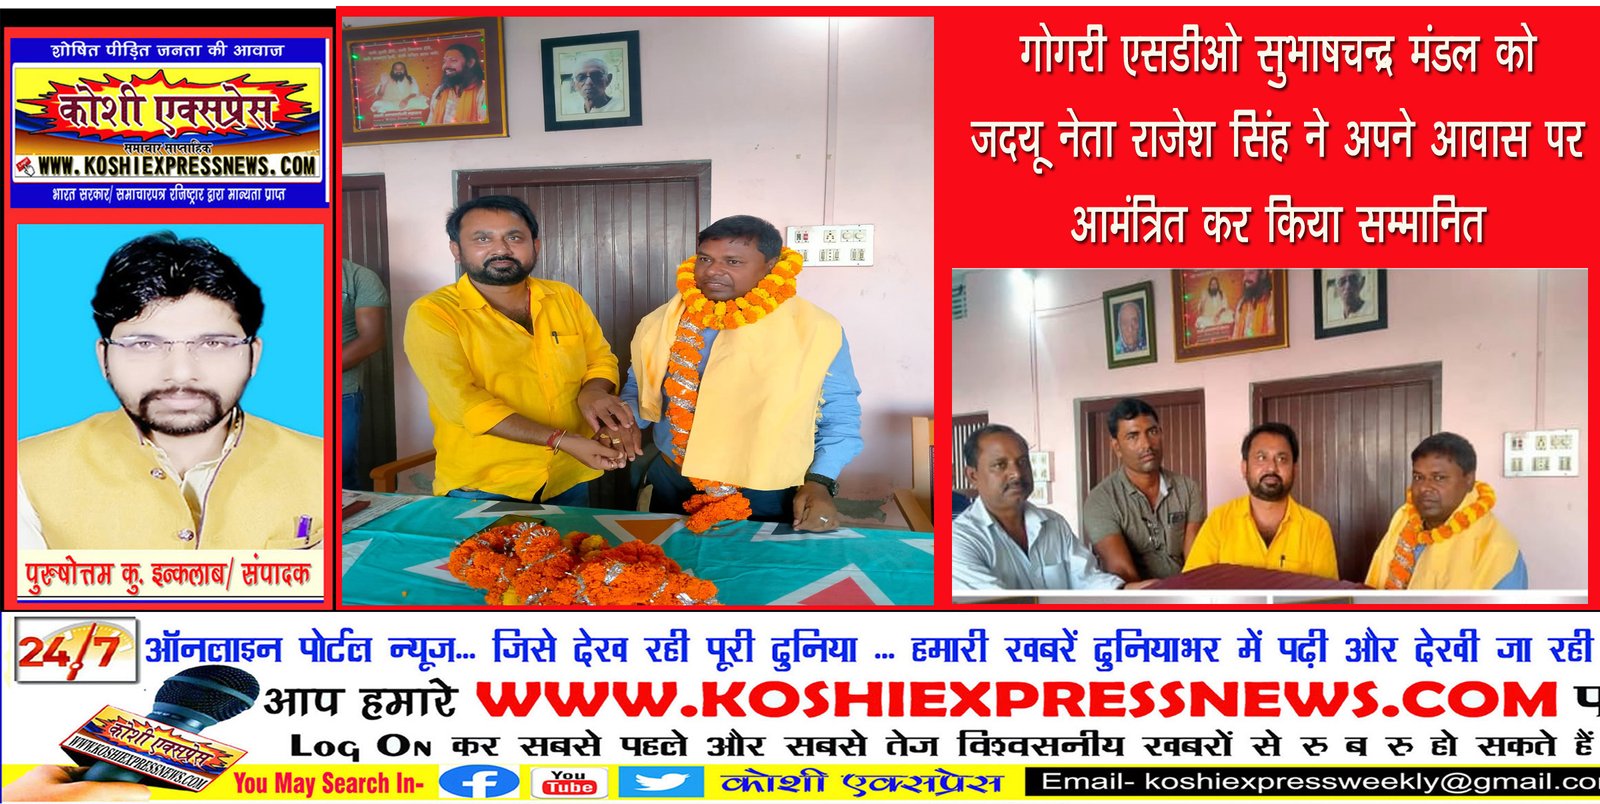 गोगरी एसडीओ सुभाषचन्द्र मंडल को जदयू नेता राजेश सिंह ने अपने आवास पर आमंत्रित कर किया सम्मानित